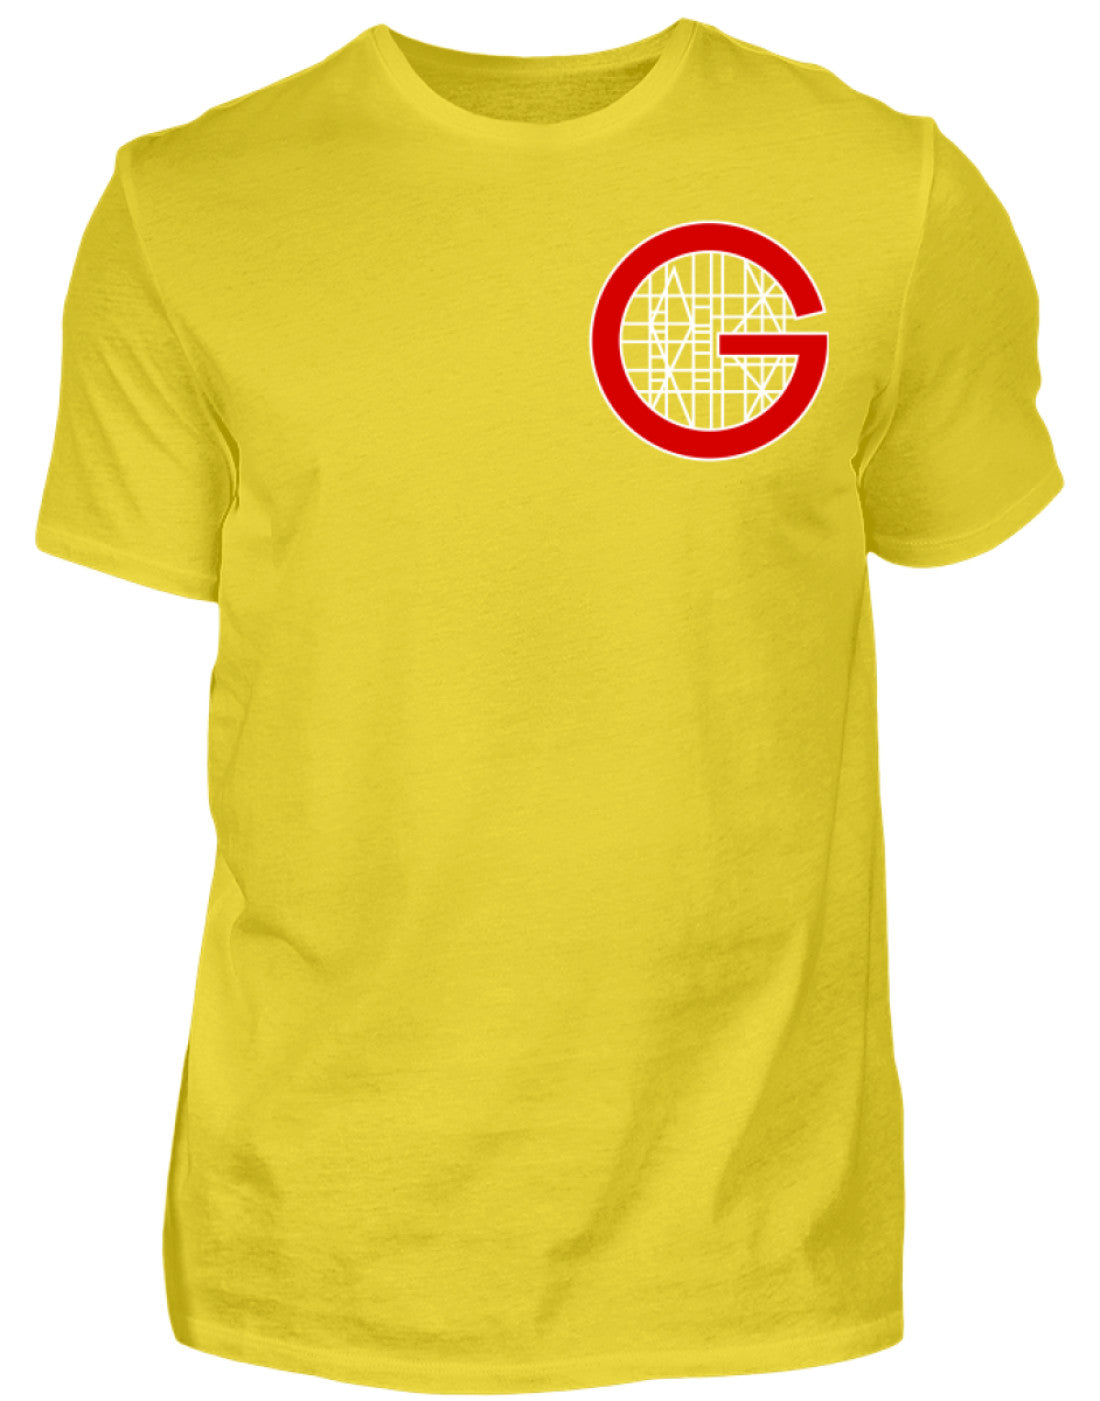 Gerüstbauer T-Shirt / Handwerk mit Tradition €24.95 Gerüstbauer - Shop >>